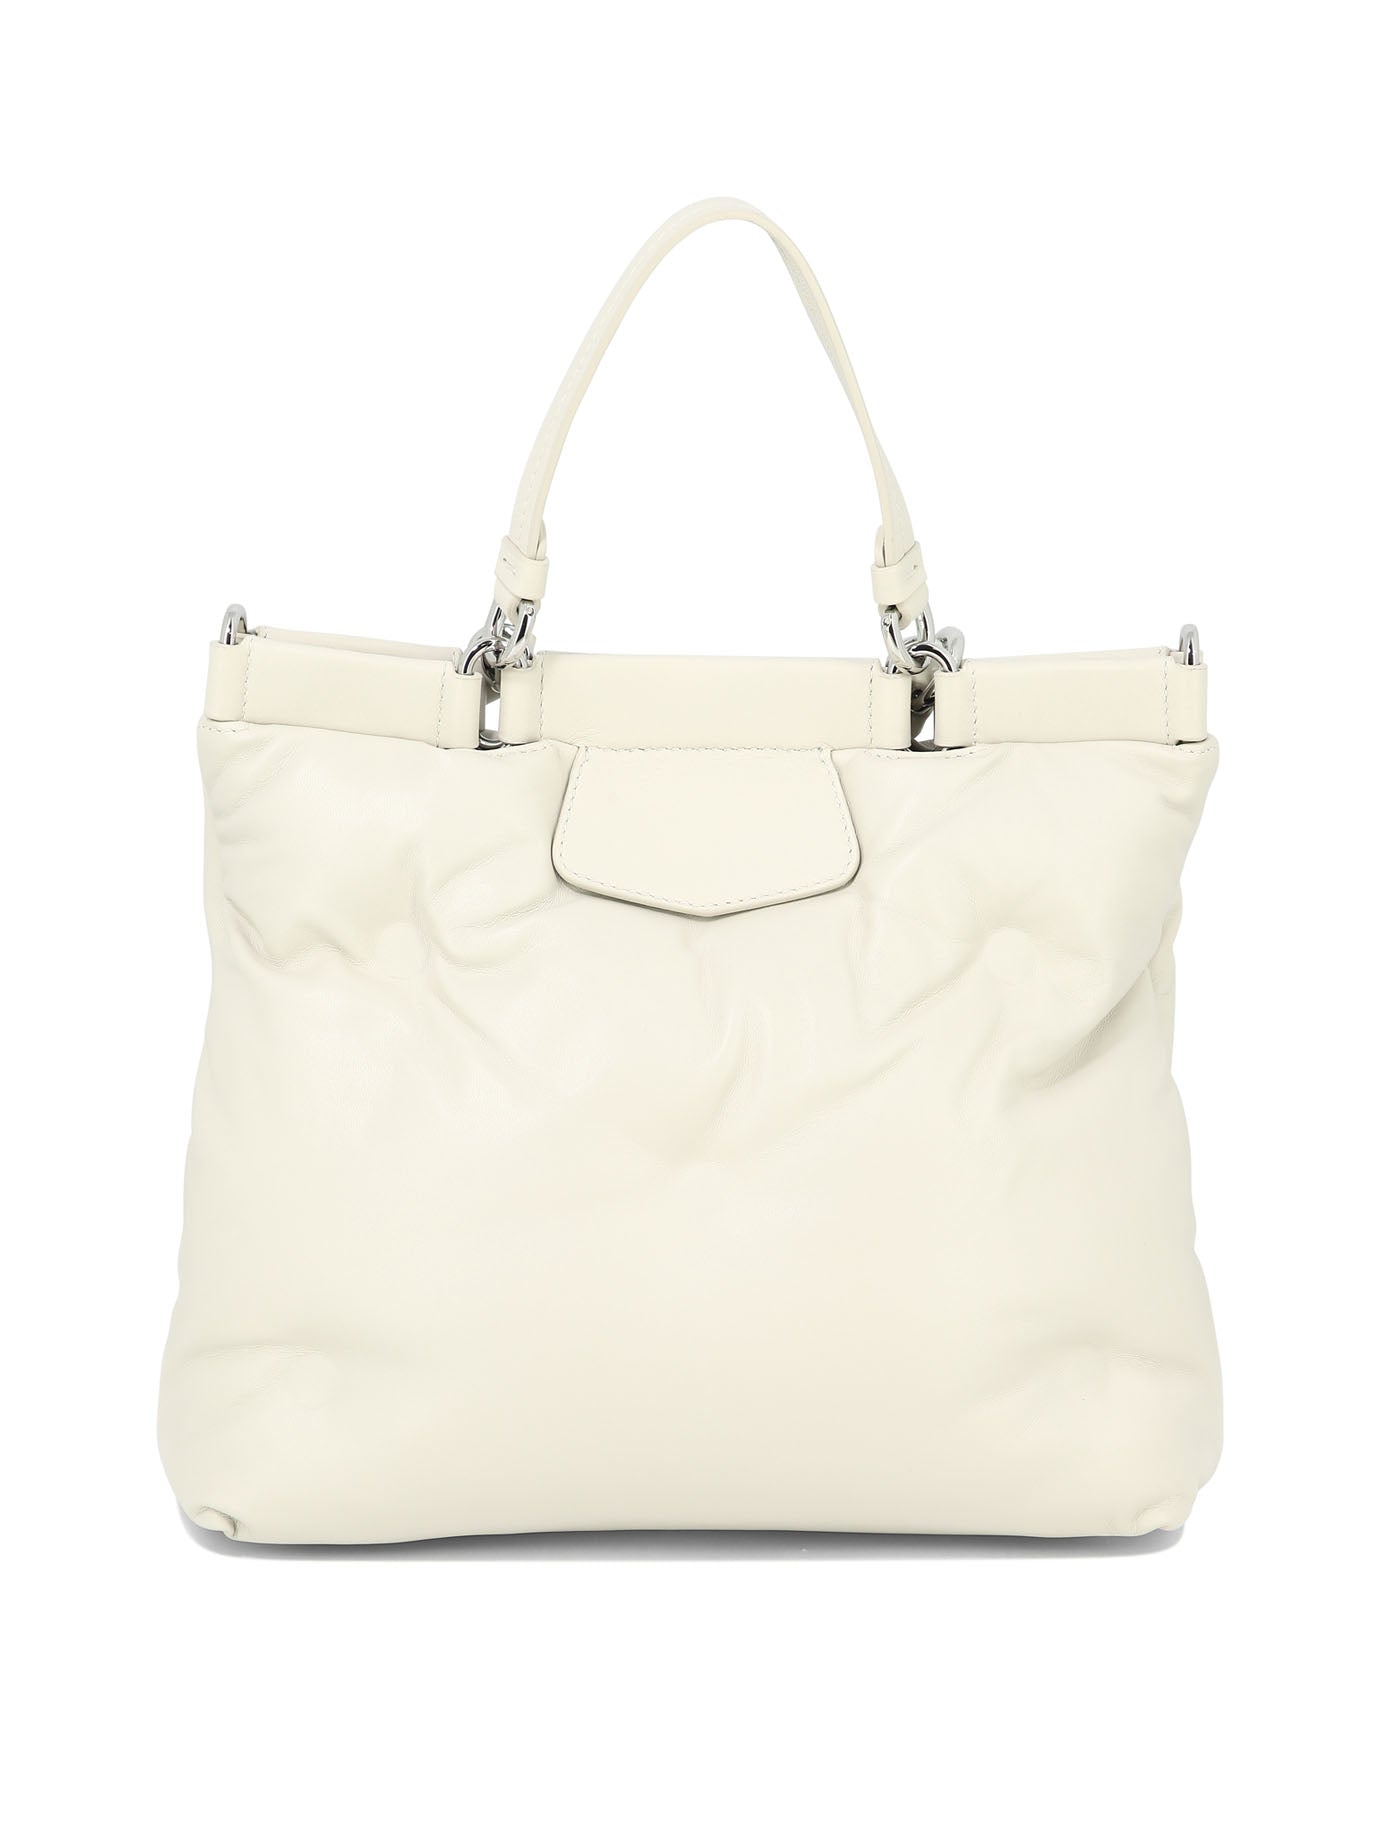 Shop Maison Margiela Glam Small Handbag In White For Women